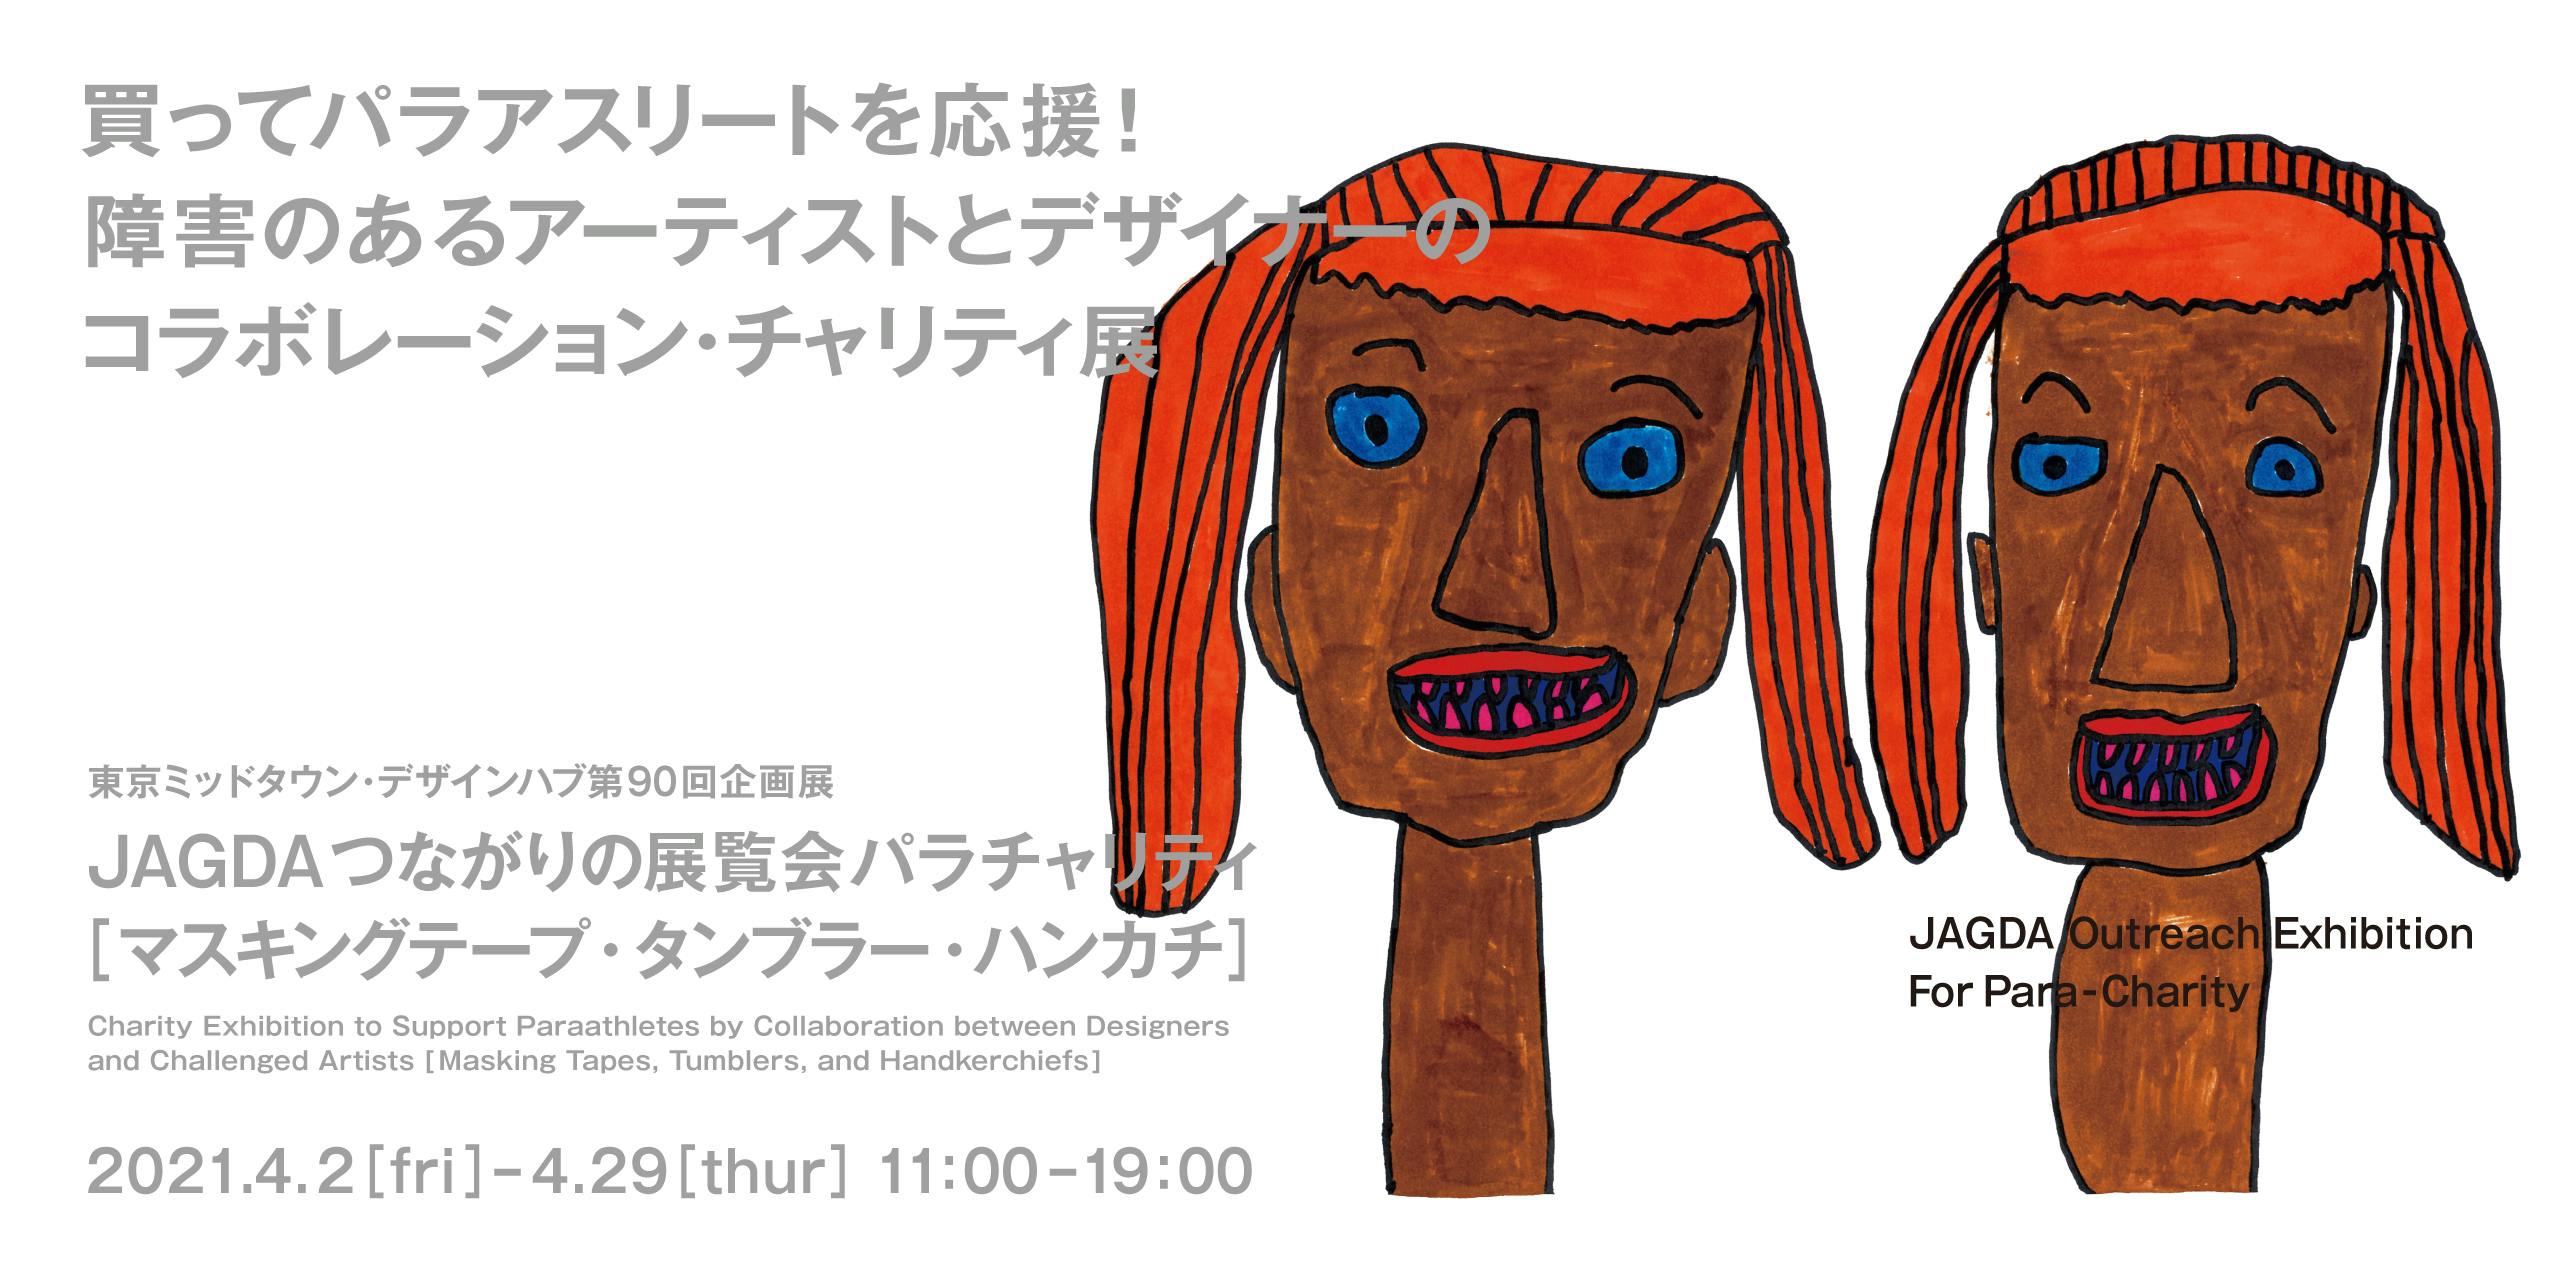 東京ミッドタウン・デザイン部 ONLINE「JAGDAつながりの展覧会 パラチャリティ」ギャラリーツアー